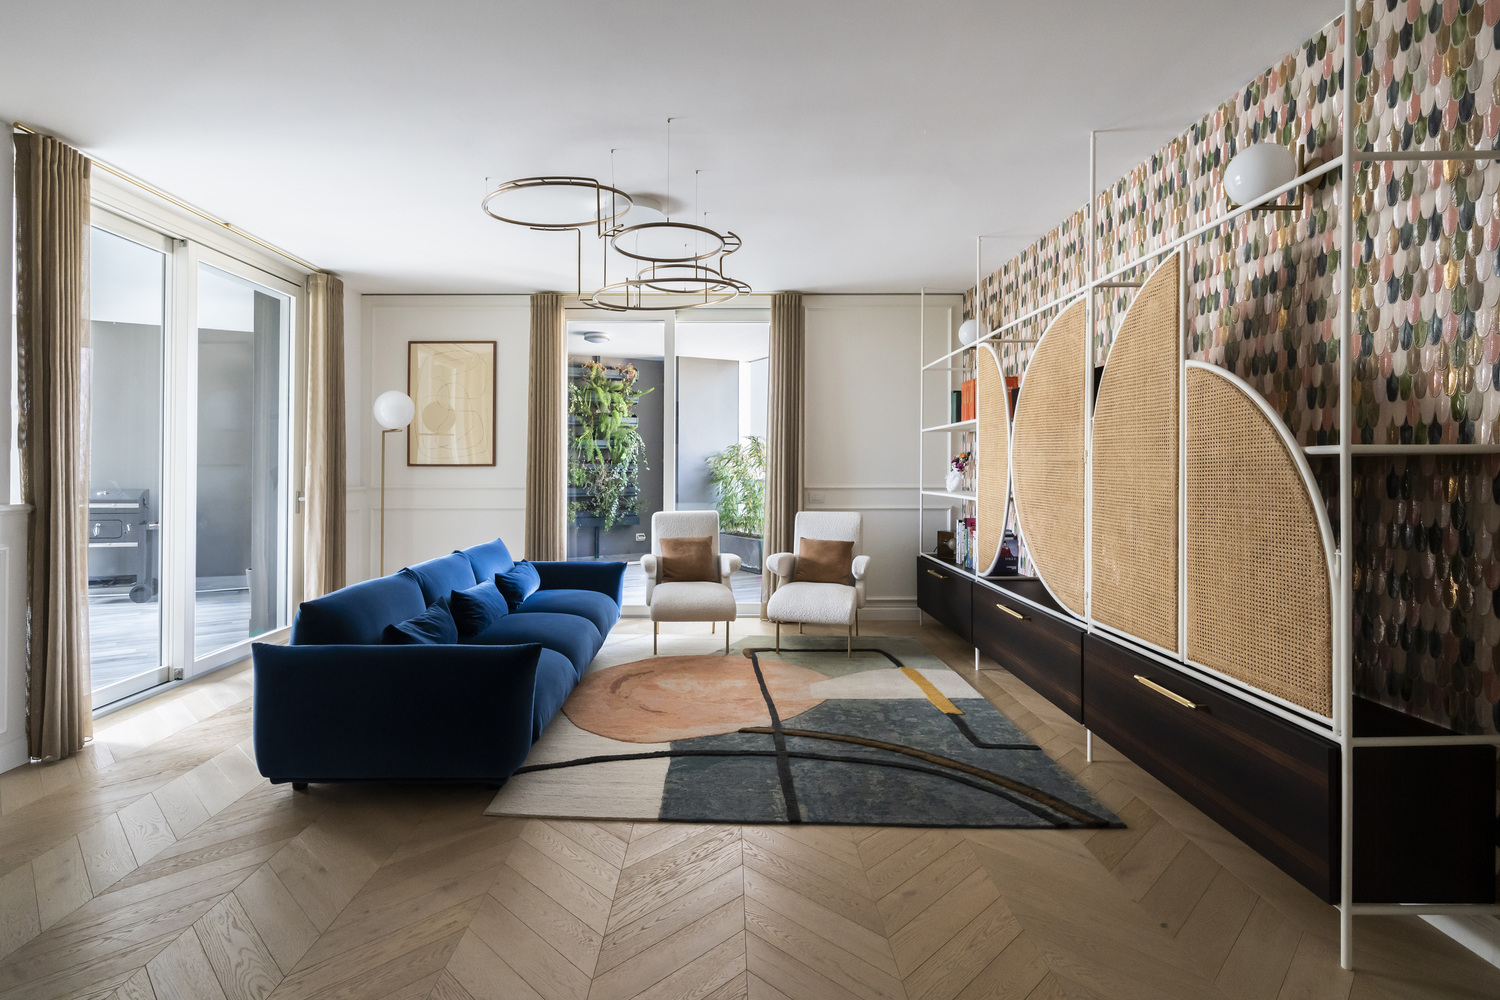 Casa LC, interior desigh – Bari, 2020